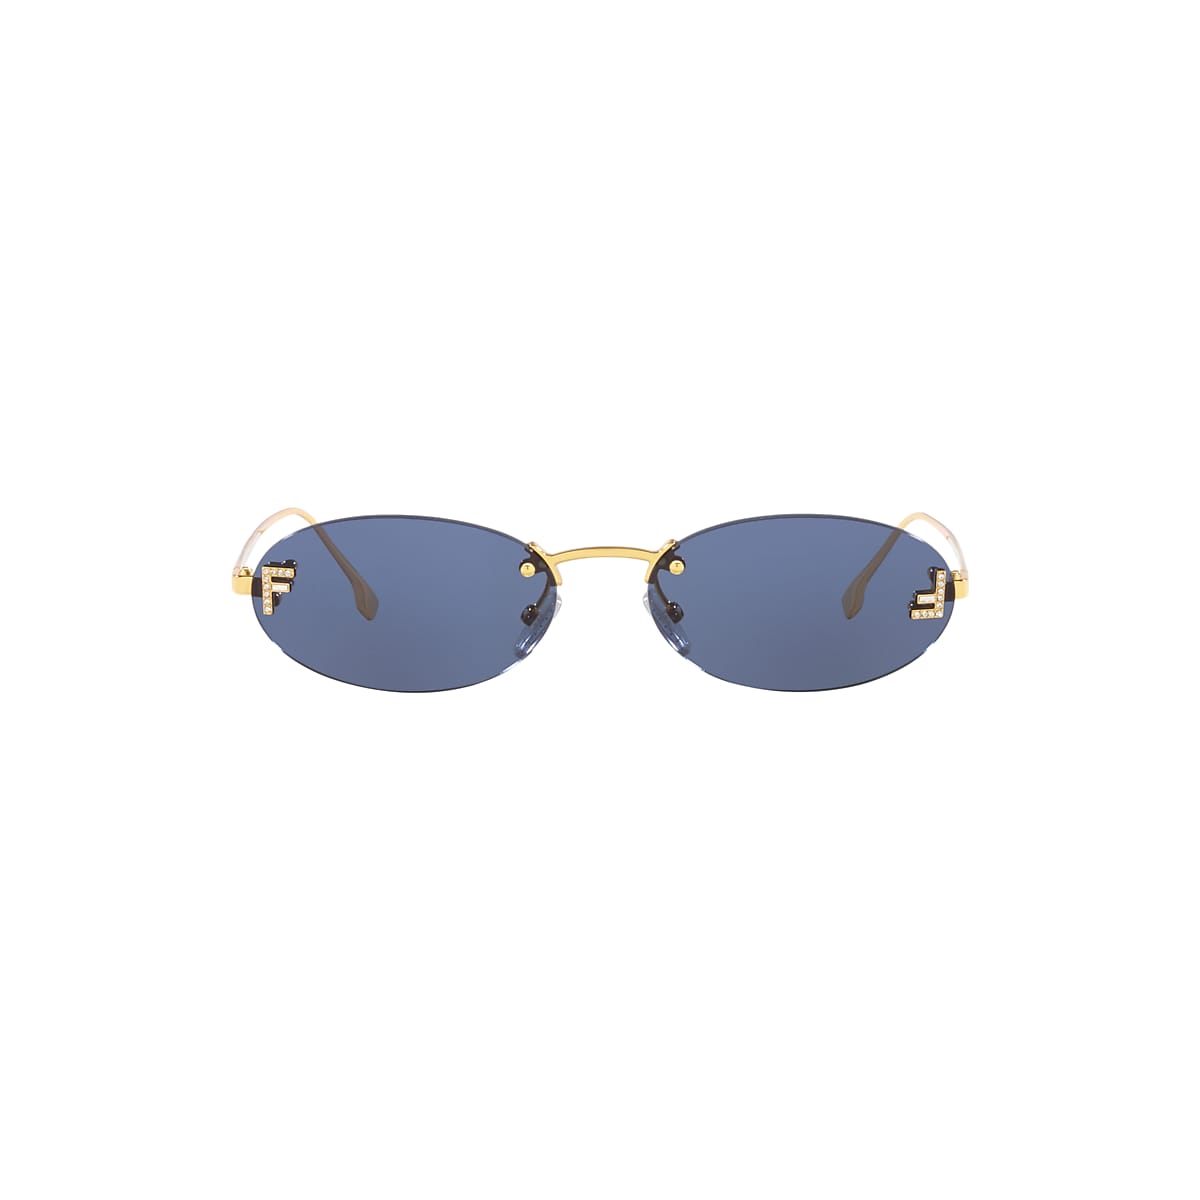 Fendi Men's Monogram Lens Metal Round Sunglasses